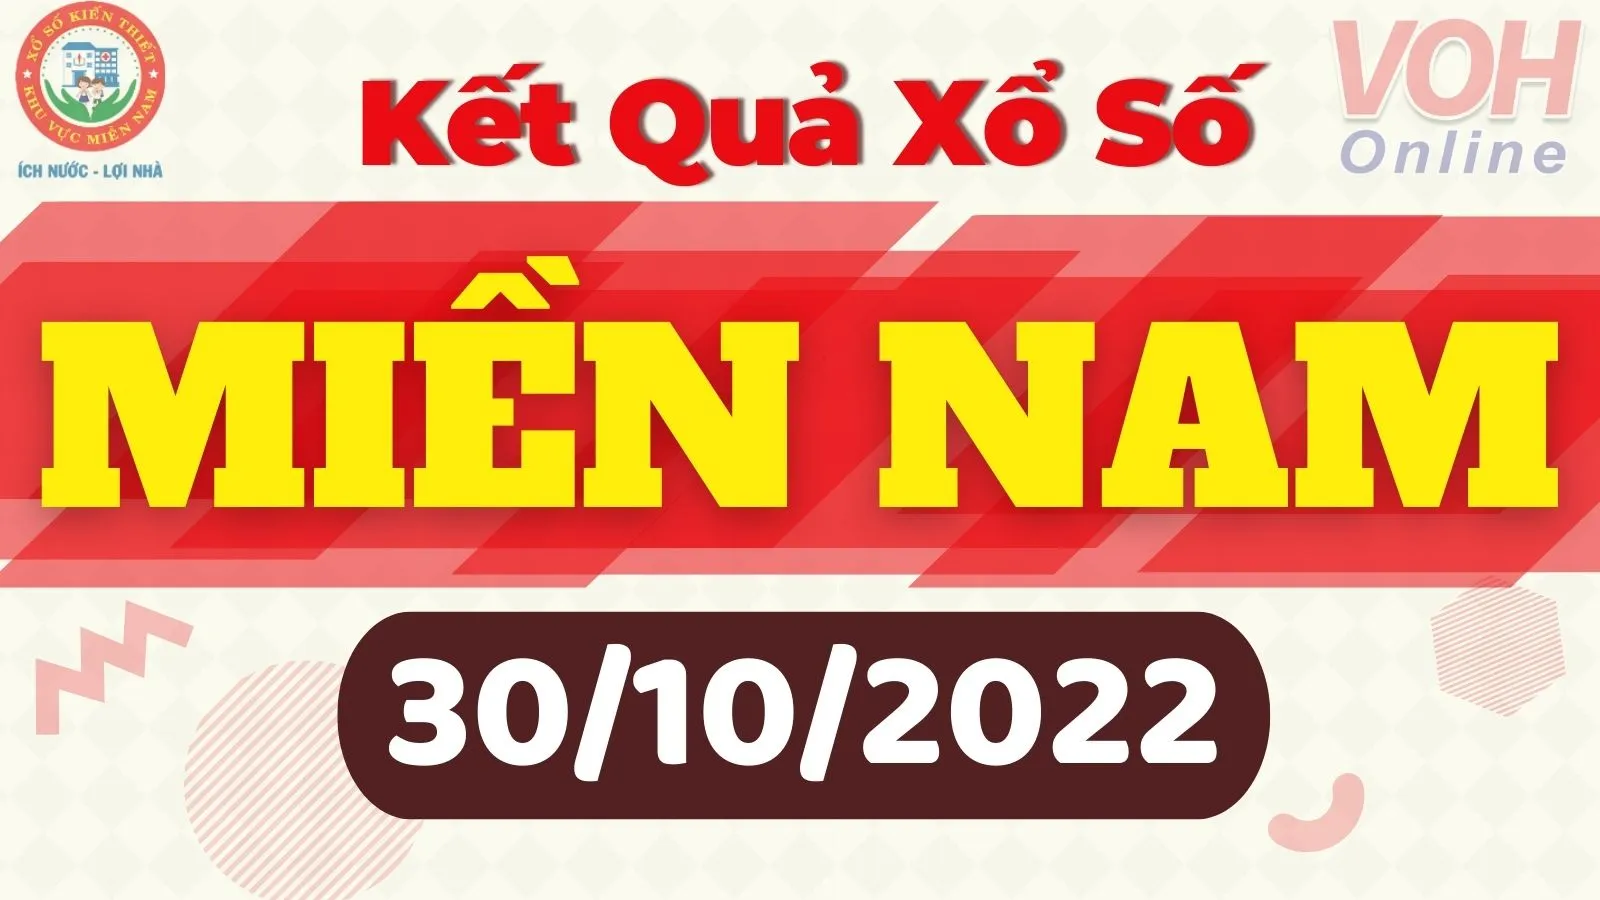 Xổ số miền Nam hôm nay - XSMN 30/10 - SXMN 30/10/2022 - Kết quả xổ số hôm nay ngày 30 tháng 10